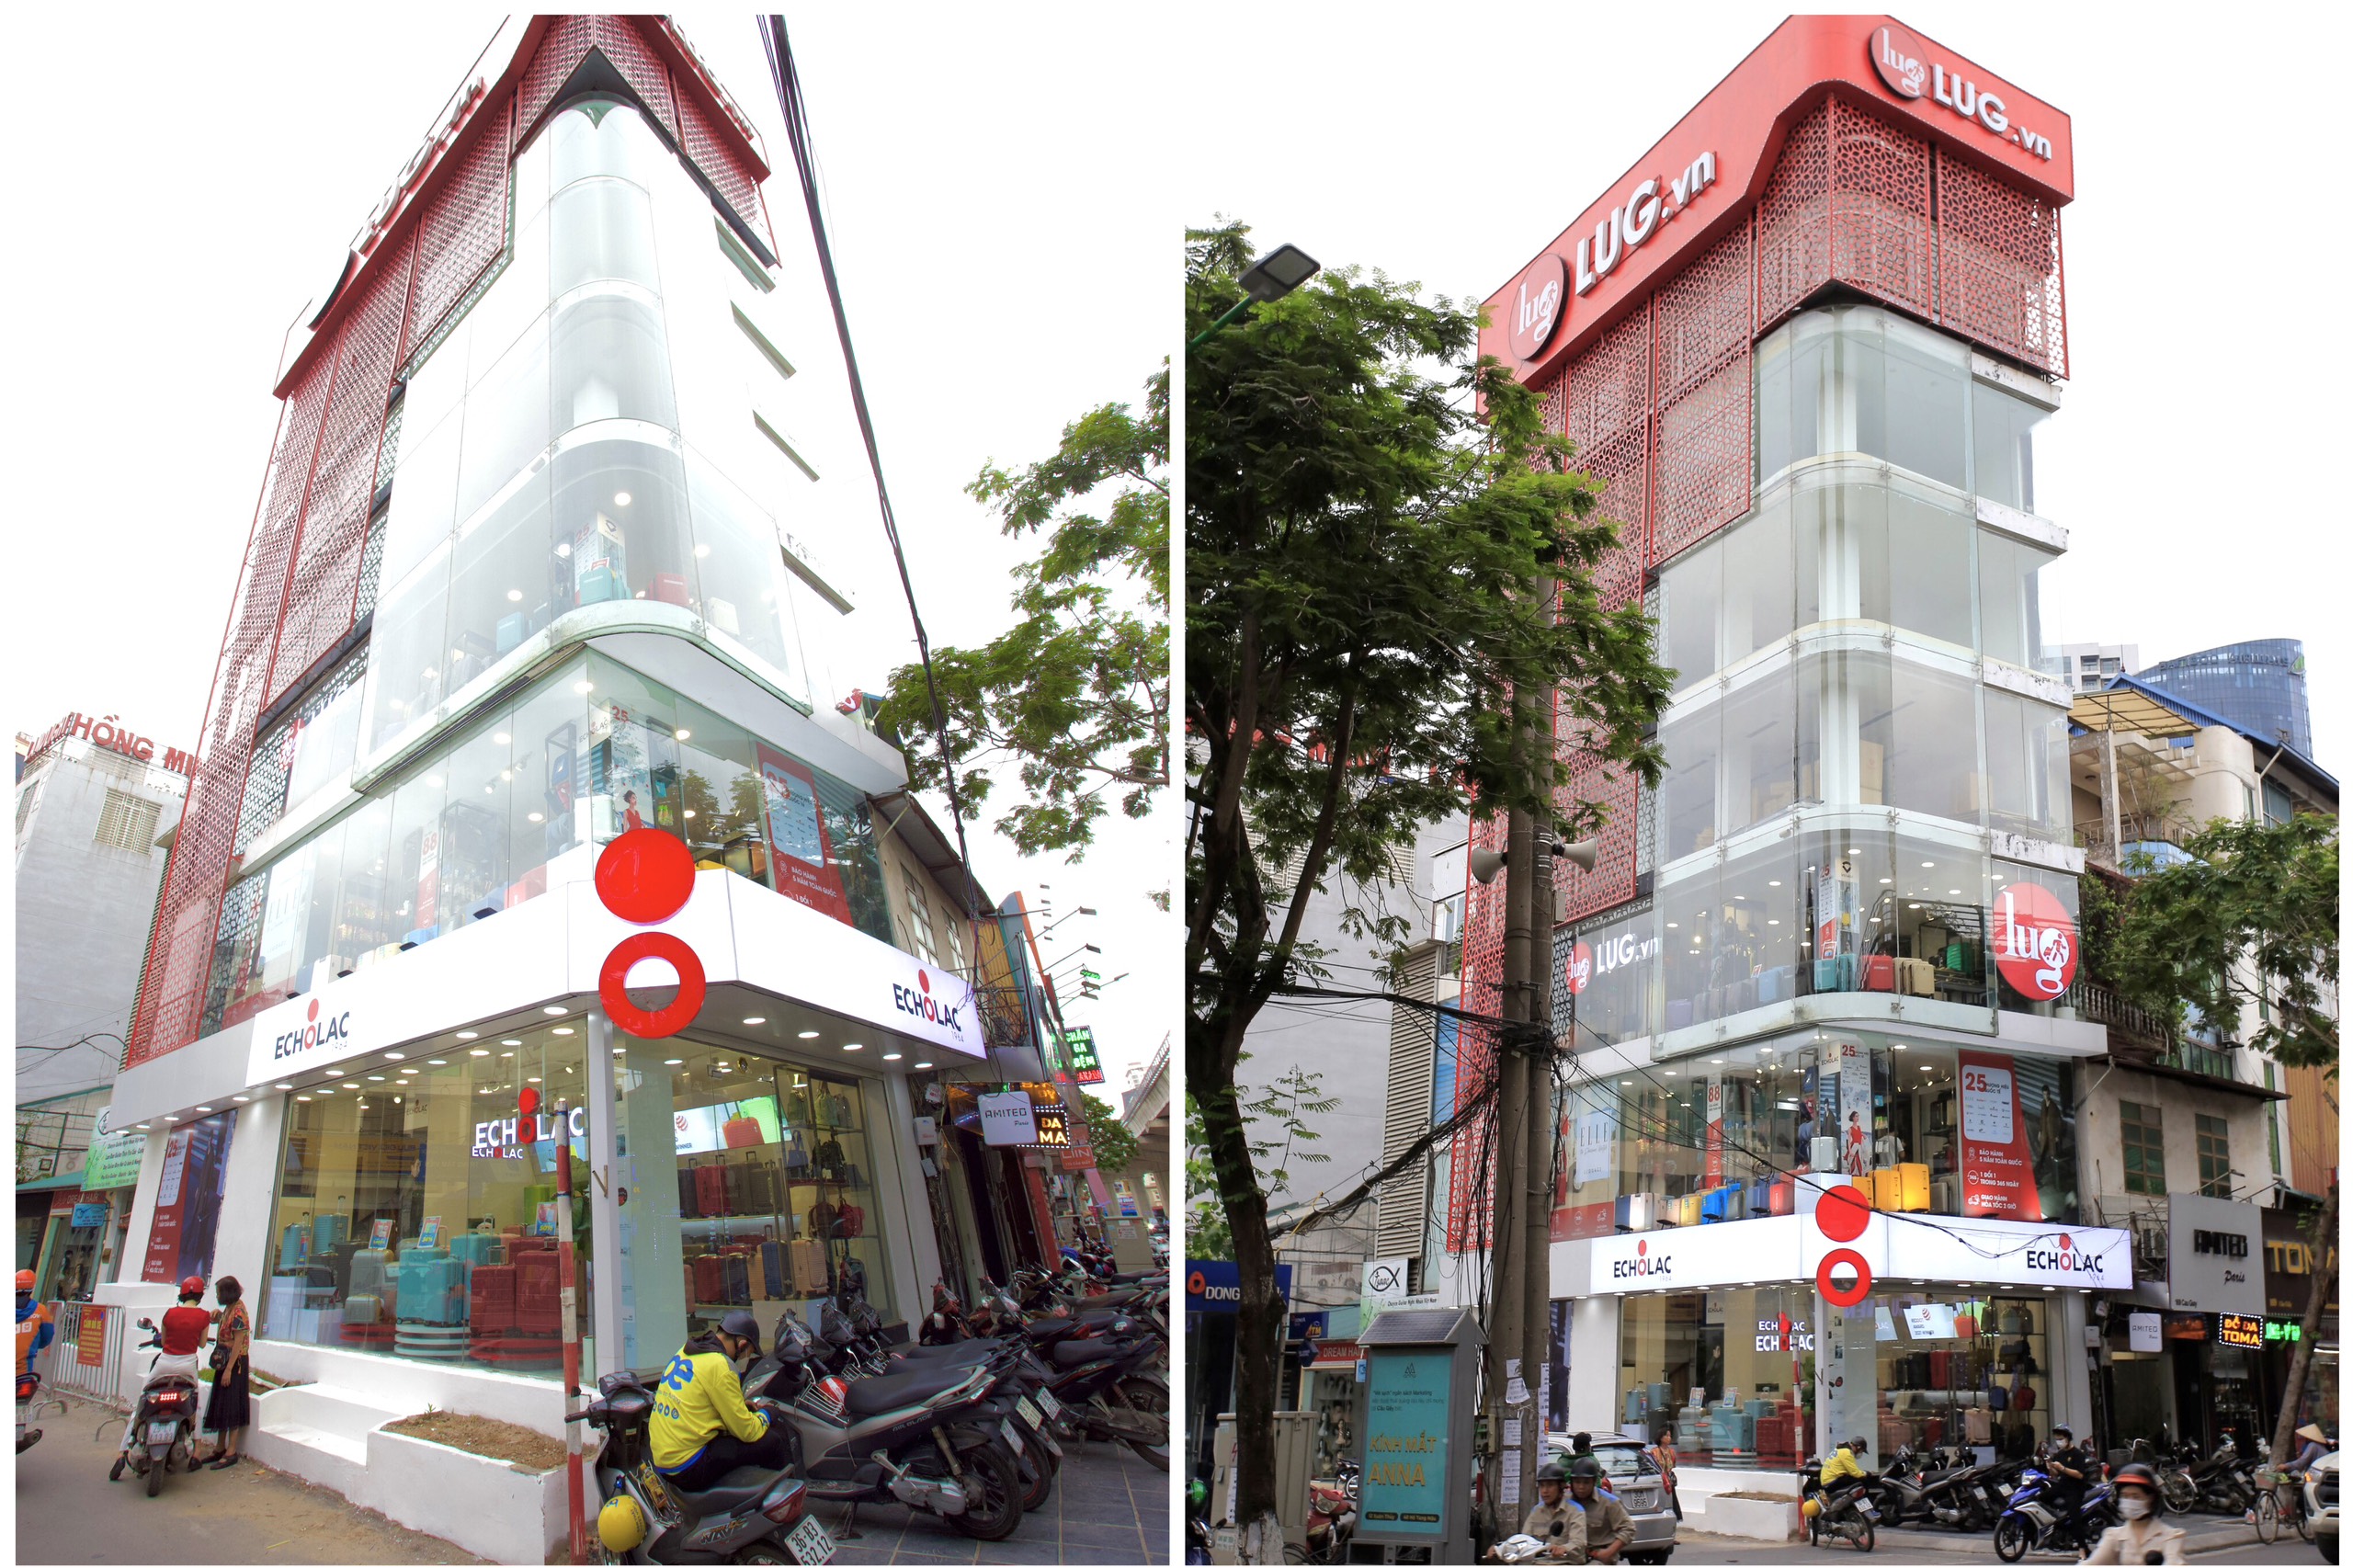 LUG.vn đồng loạt khai trương hai cửa hàng hành lý cao cấp tại Hà Nội và Thành phố Hồ Chí Minh - 1